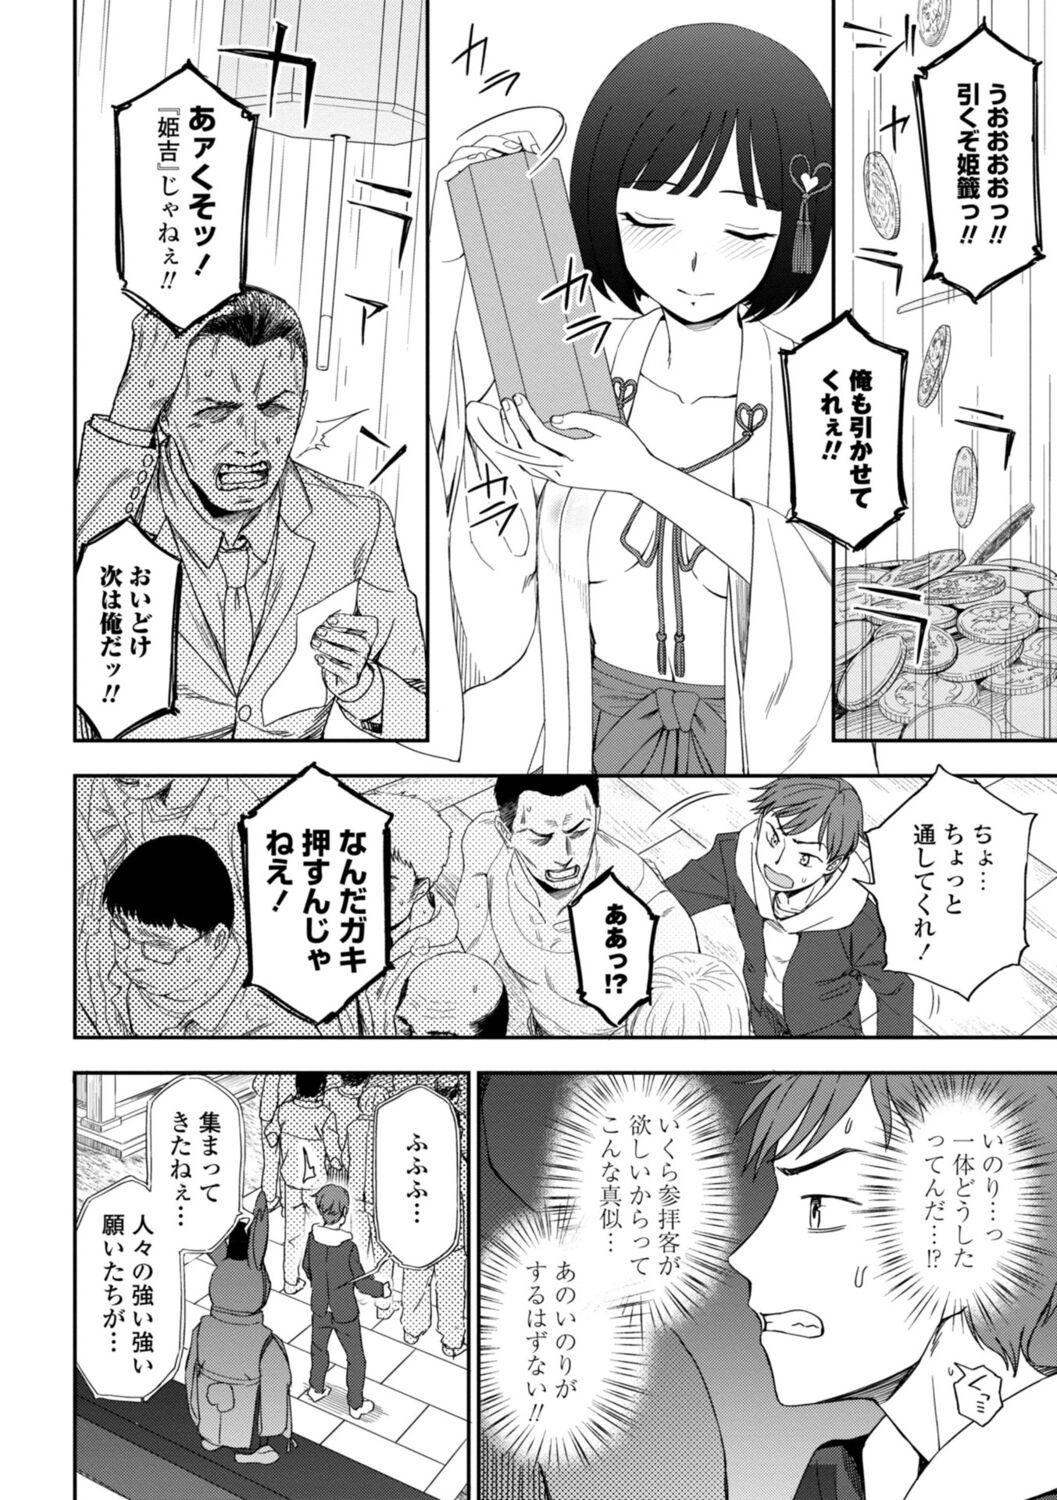 Girl On Girl Watashi no Subete Sasagemasu - I'll give you all of mine. Desnuda - Page 8